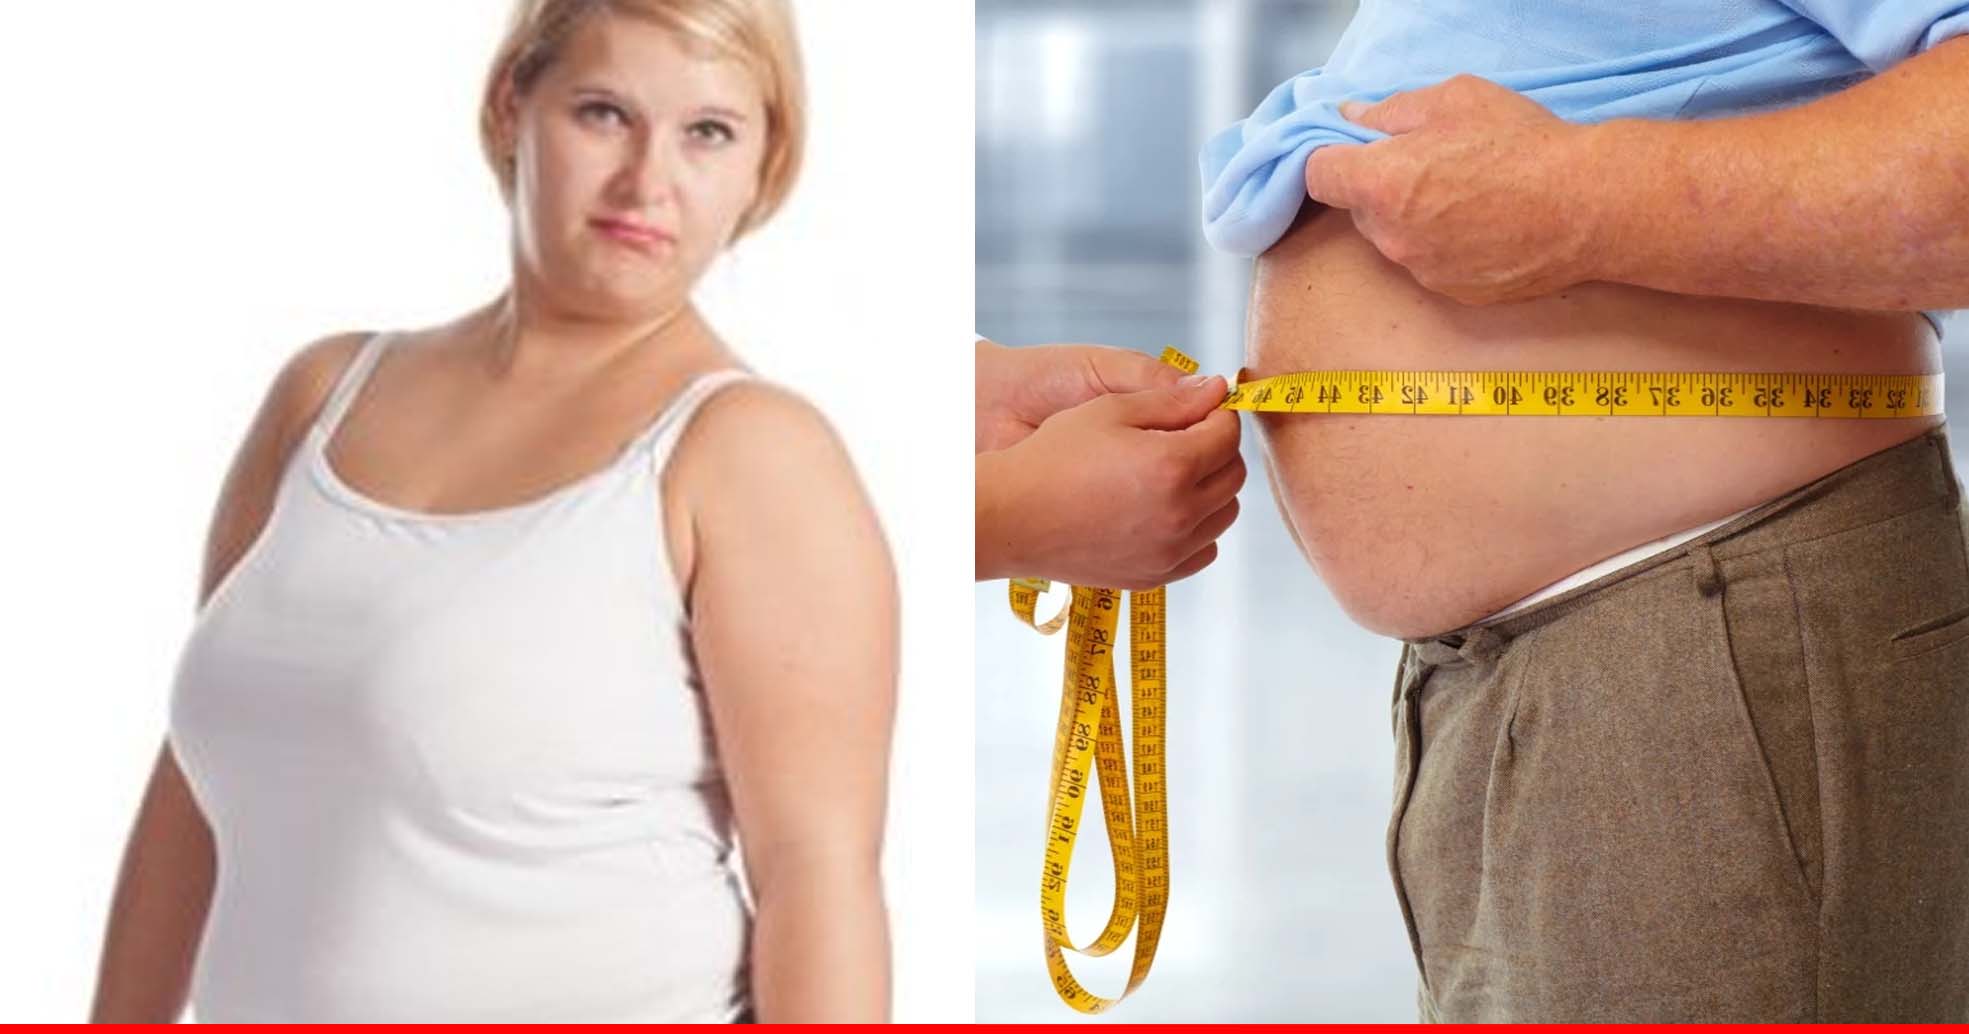 लड़कों की तुलना में लड़कियों के लिए मोटापा ज्यादा खतरनाक, बढ़ता है हृदय रोगों का खतरा